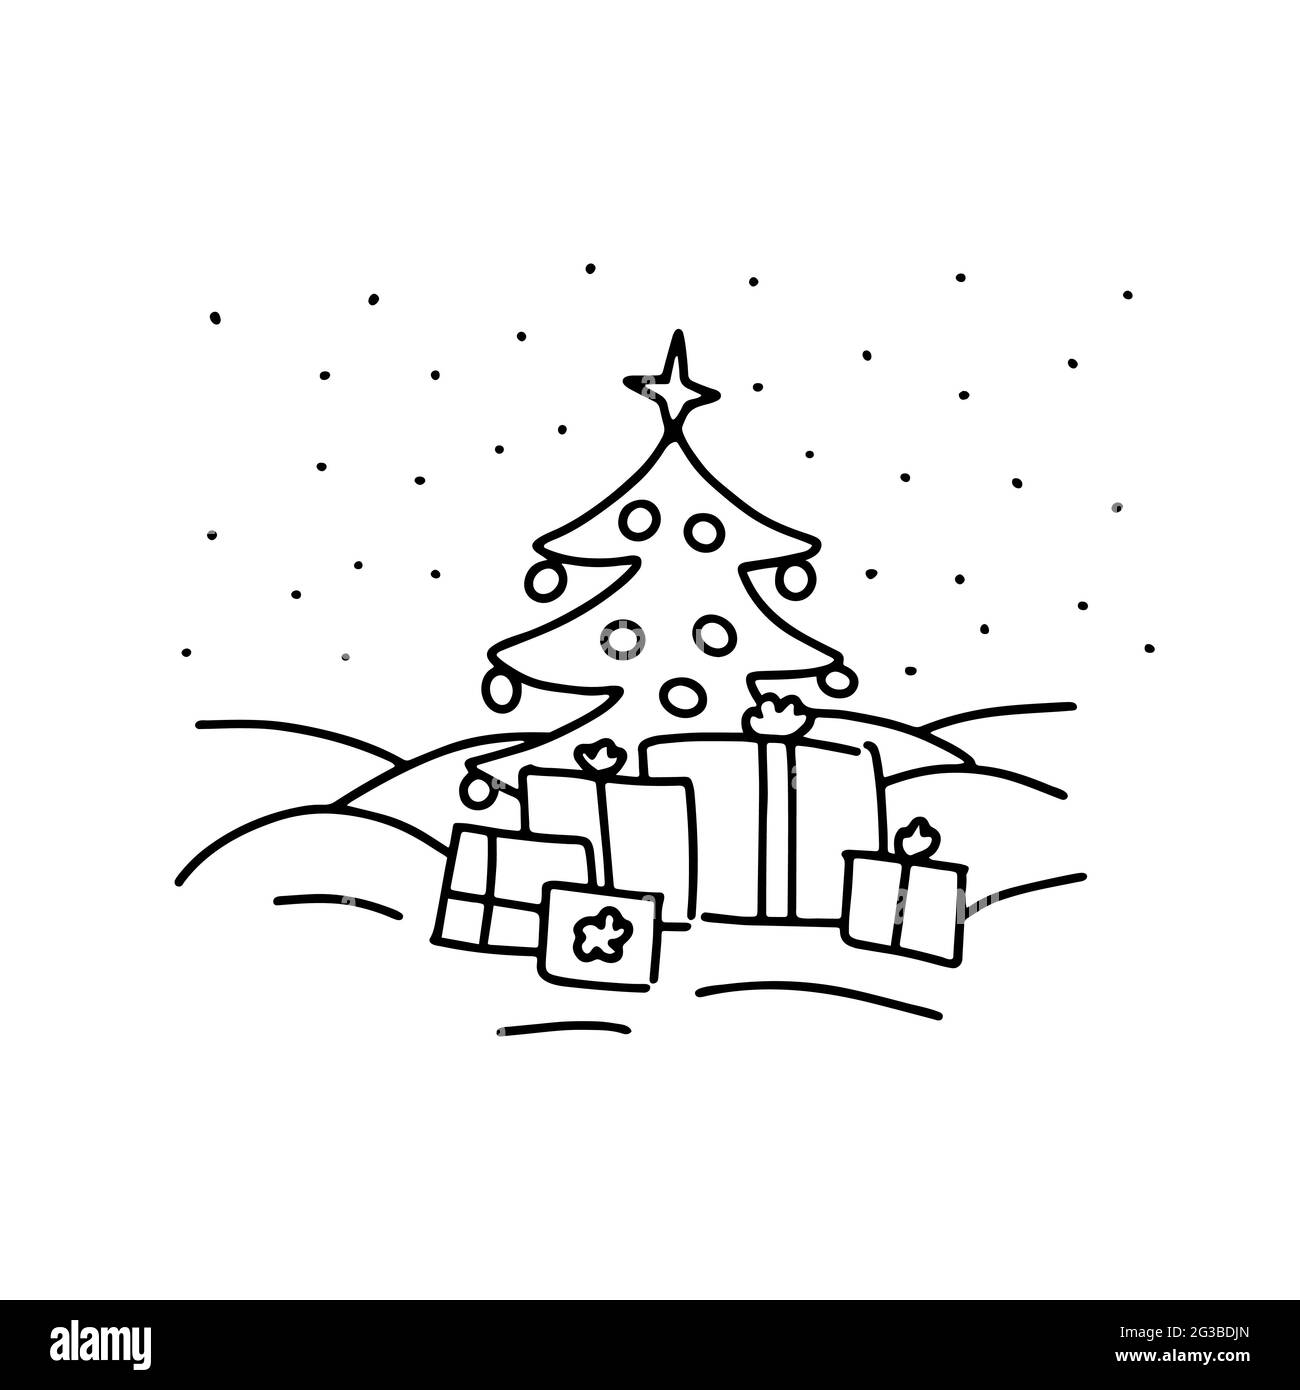 Doodle albero di Natale concetto. Paesaggio con abeti natalizi, regali, fiocchi di neve isolati su sfondo bianco. Il paesaggio di Capodanno di festa innevato. Illustrazione Vettoriale